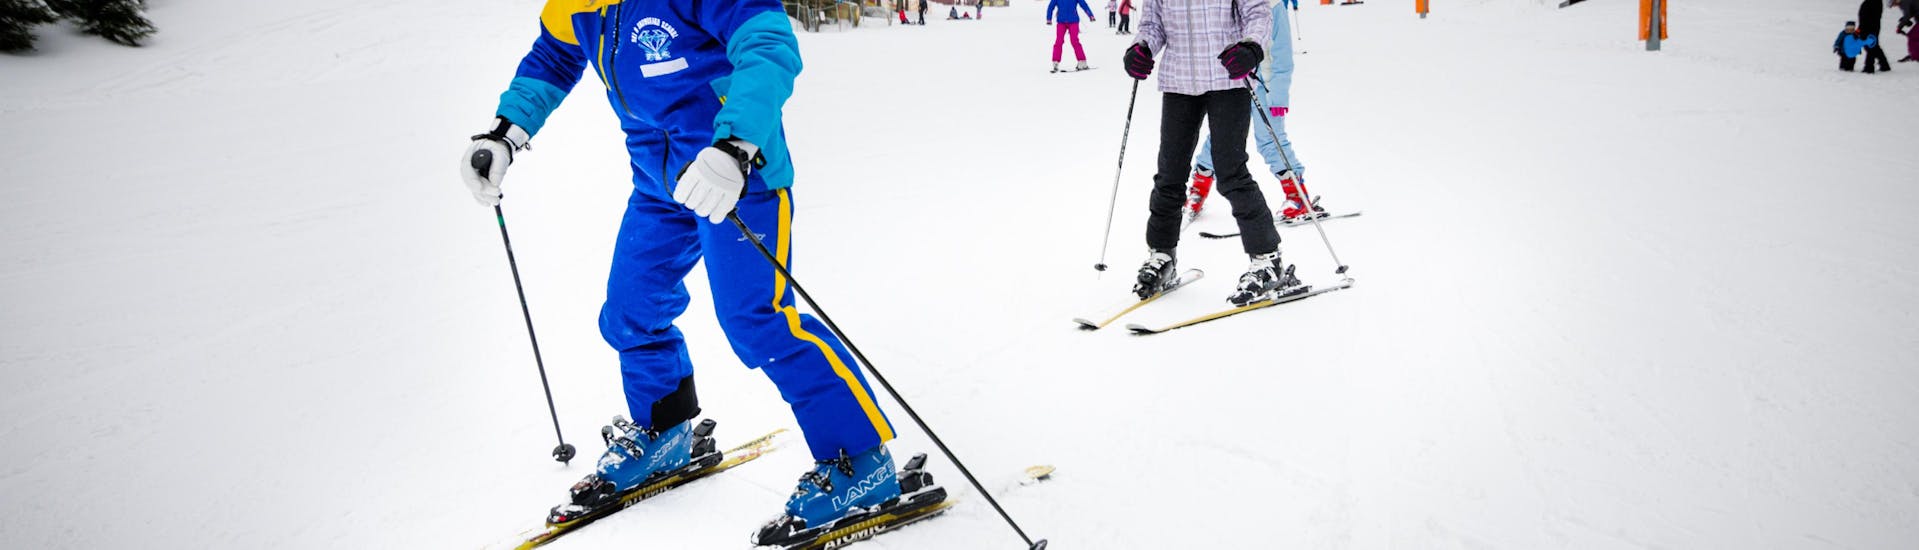 Cours particulier de ski Adultes dès 17 ans pour Tous niveaux avec Crystal Ski  Demänovská Dolina.